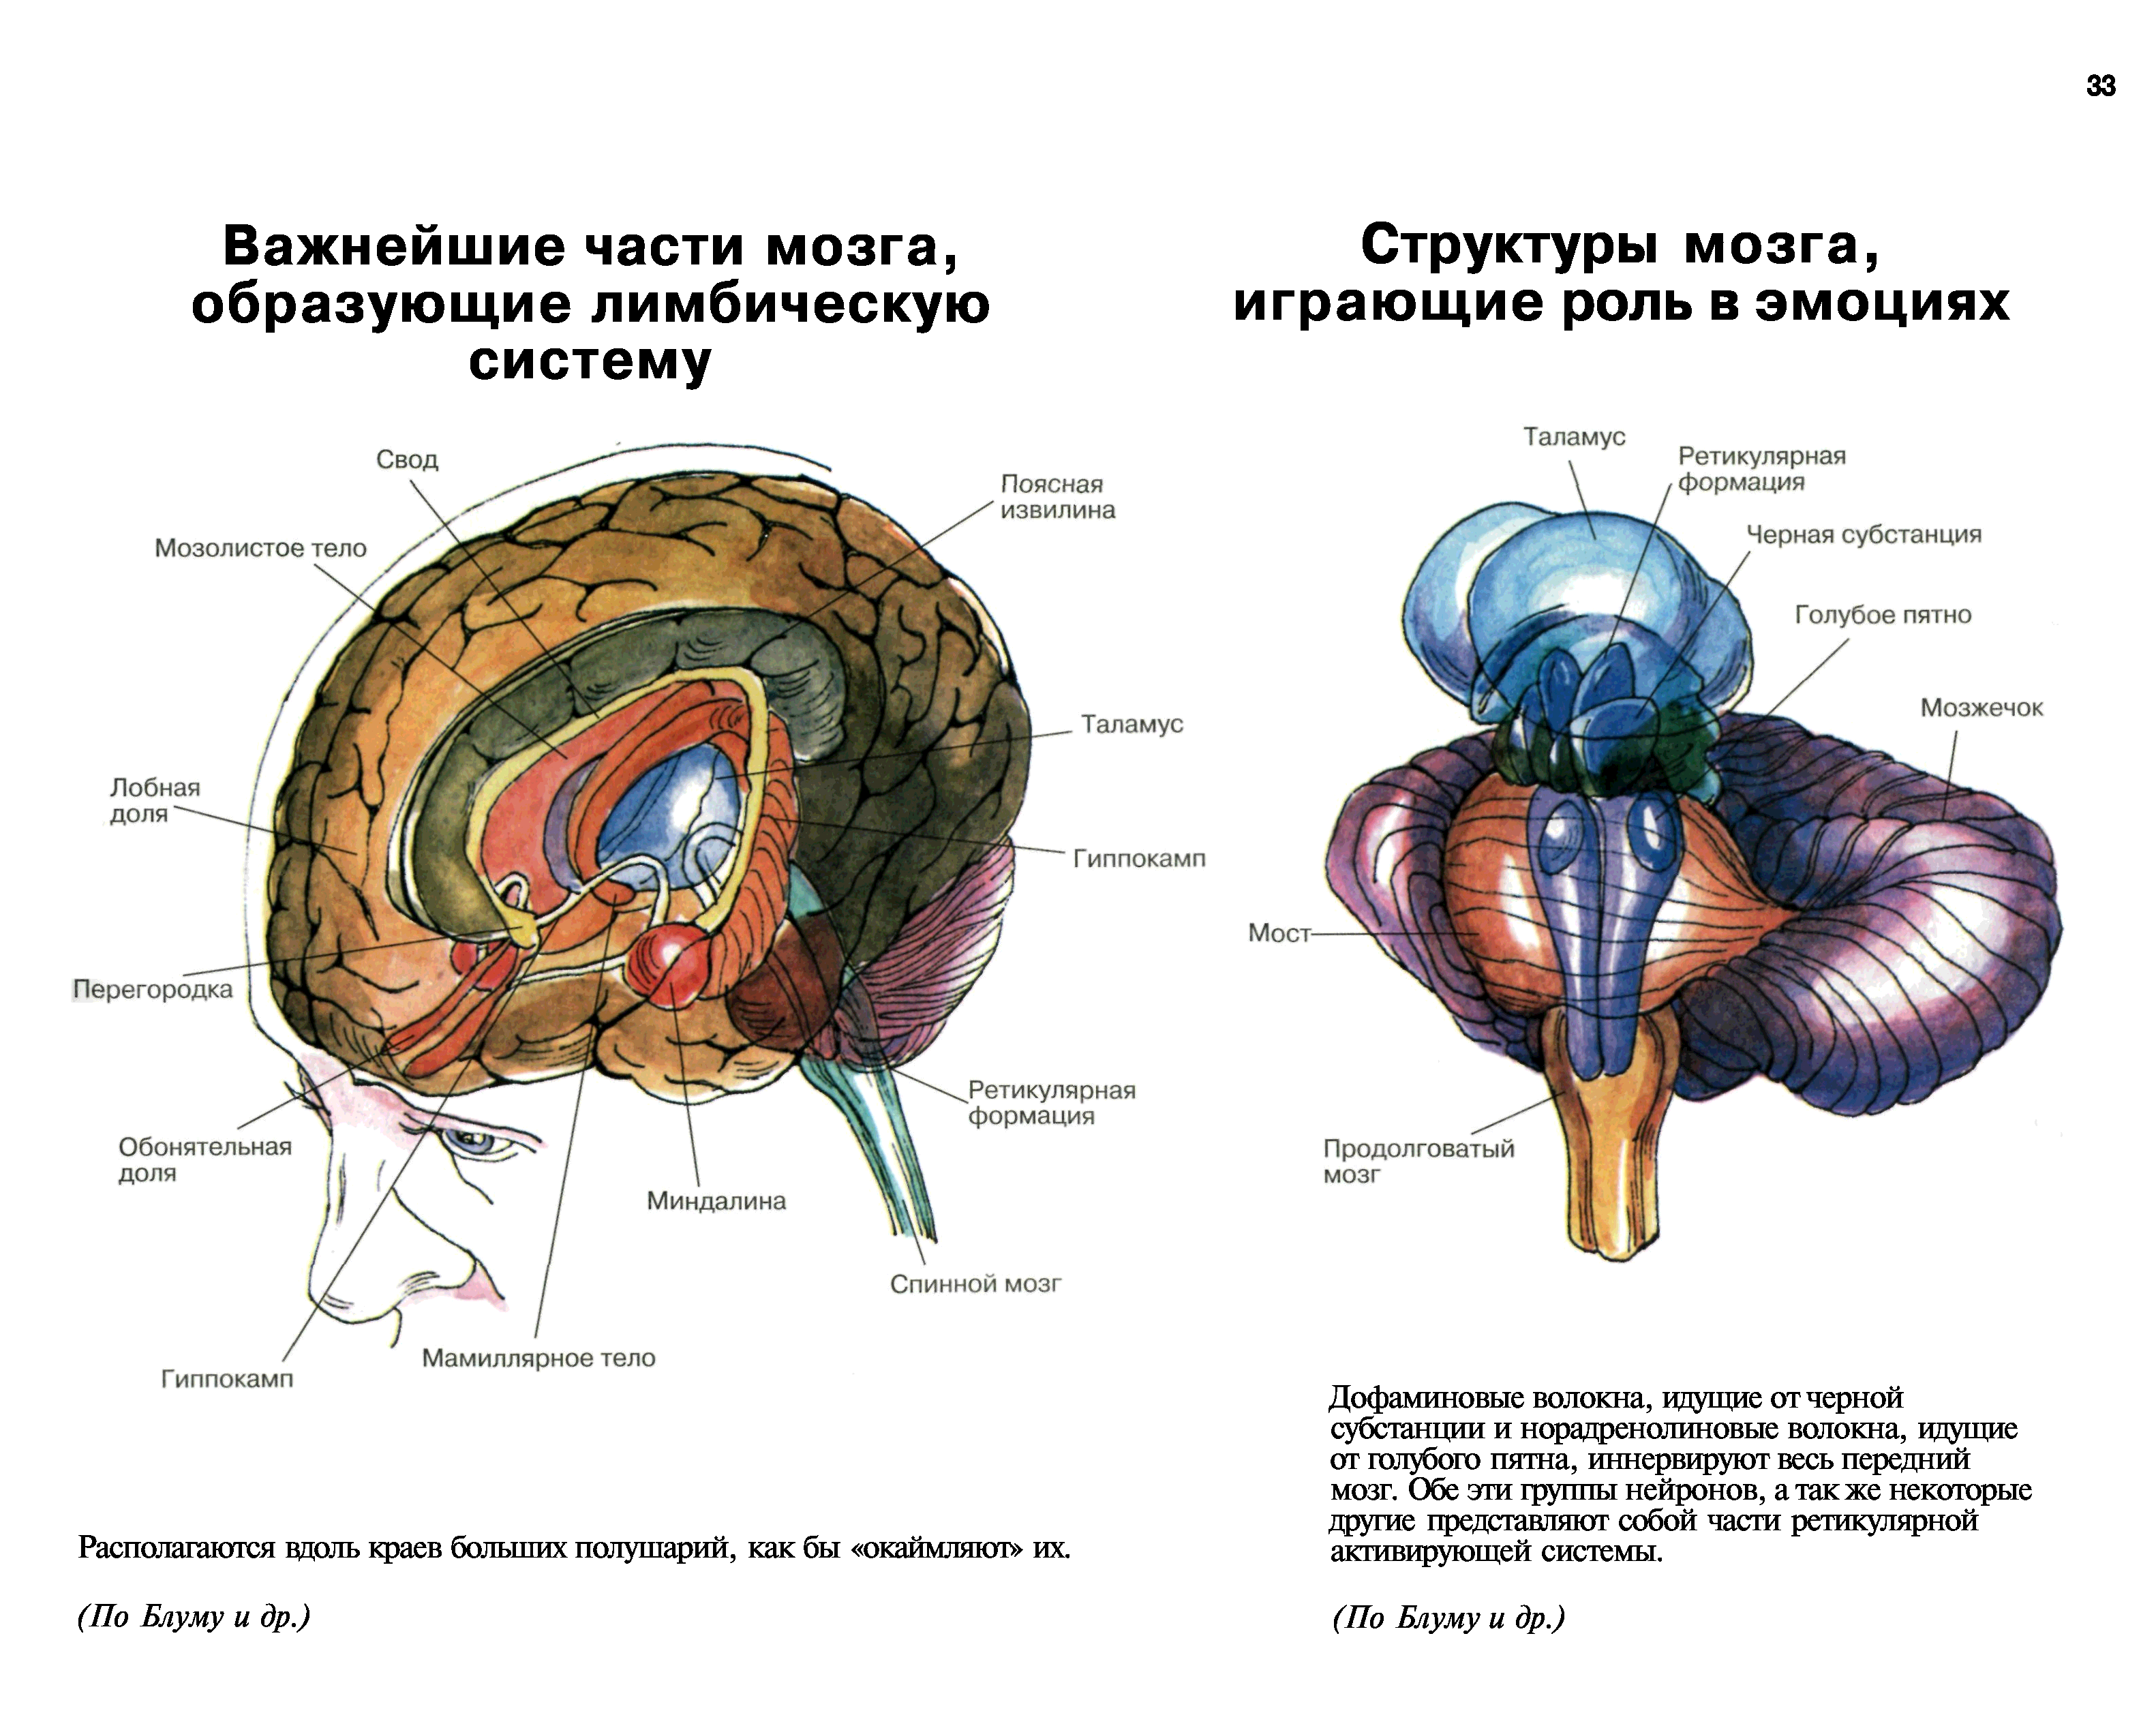 Структуры лимбической системы головного мозга